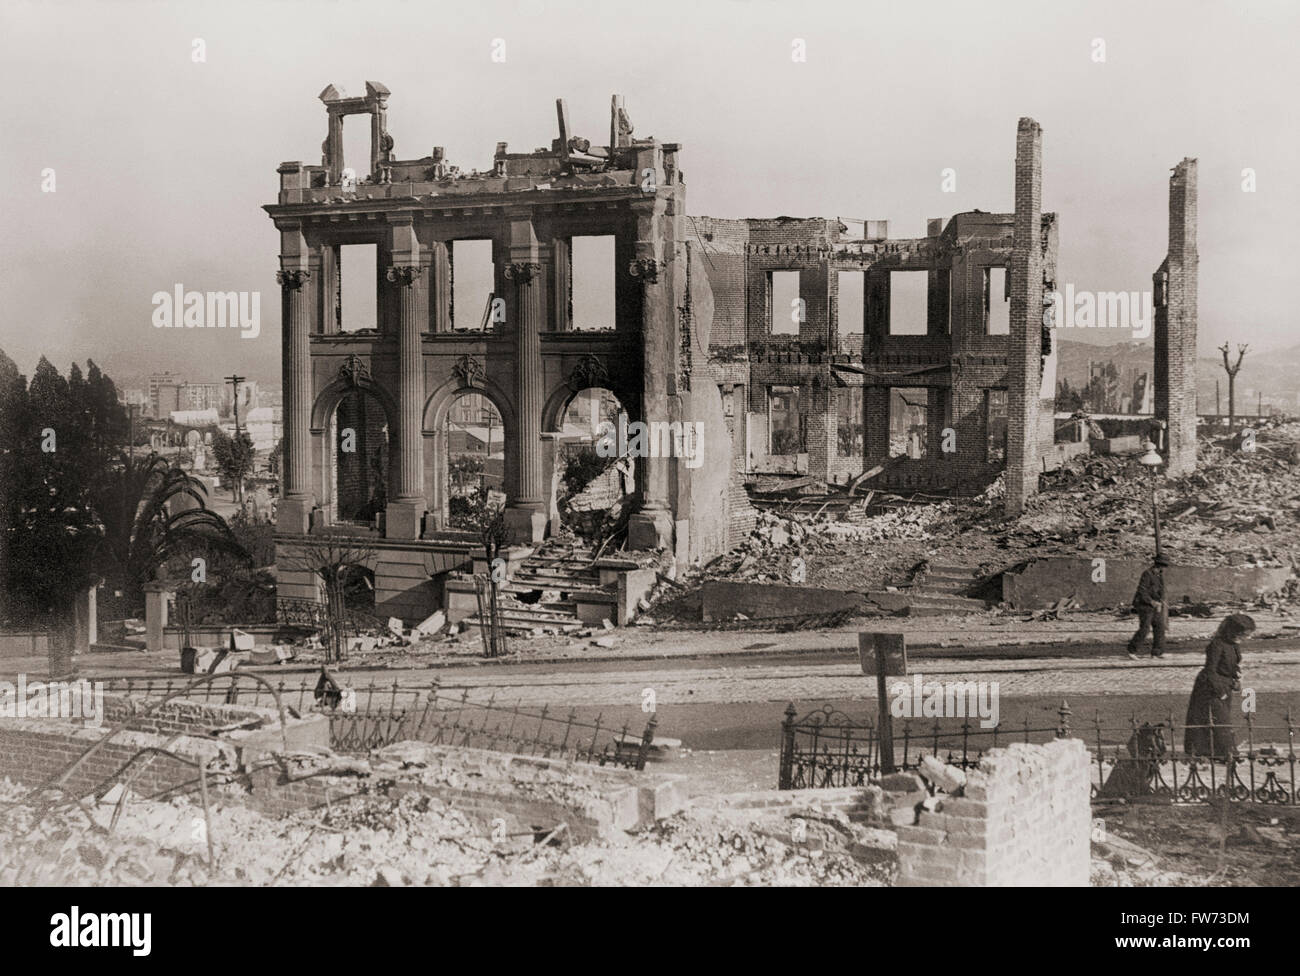 Ruines à San Francisco, Californie, États-Unis d'Amérique, après le séisme du 18 avril 1906. Après une photographie originale par le photographe Arnold Genthe, 1869-1942. Banque D'Images